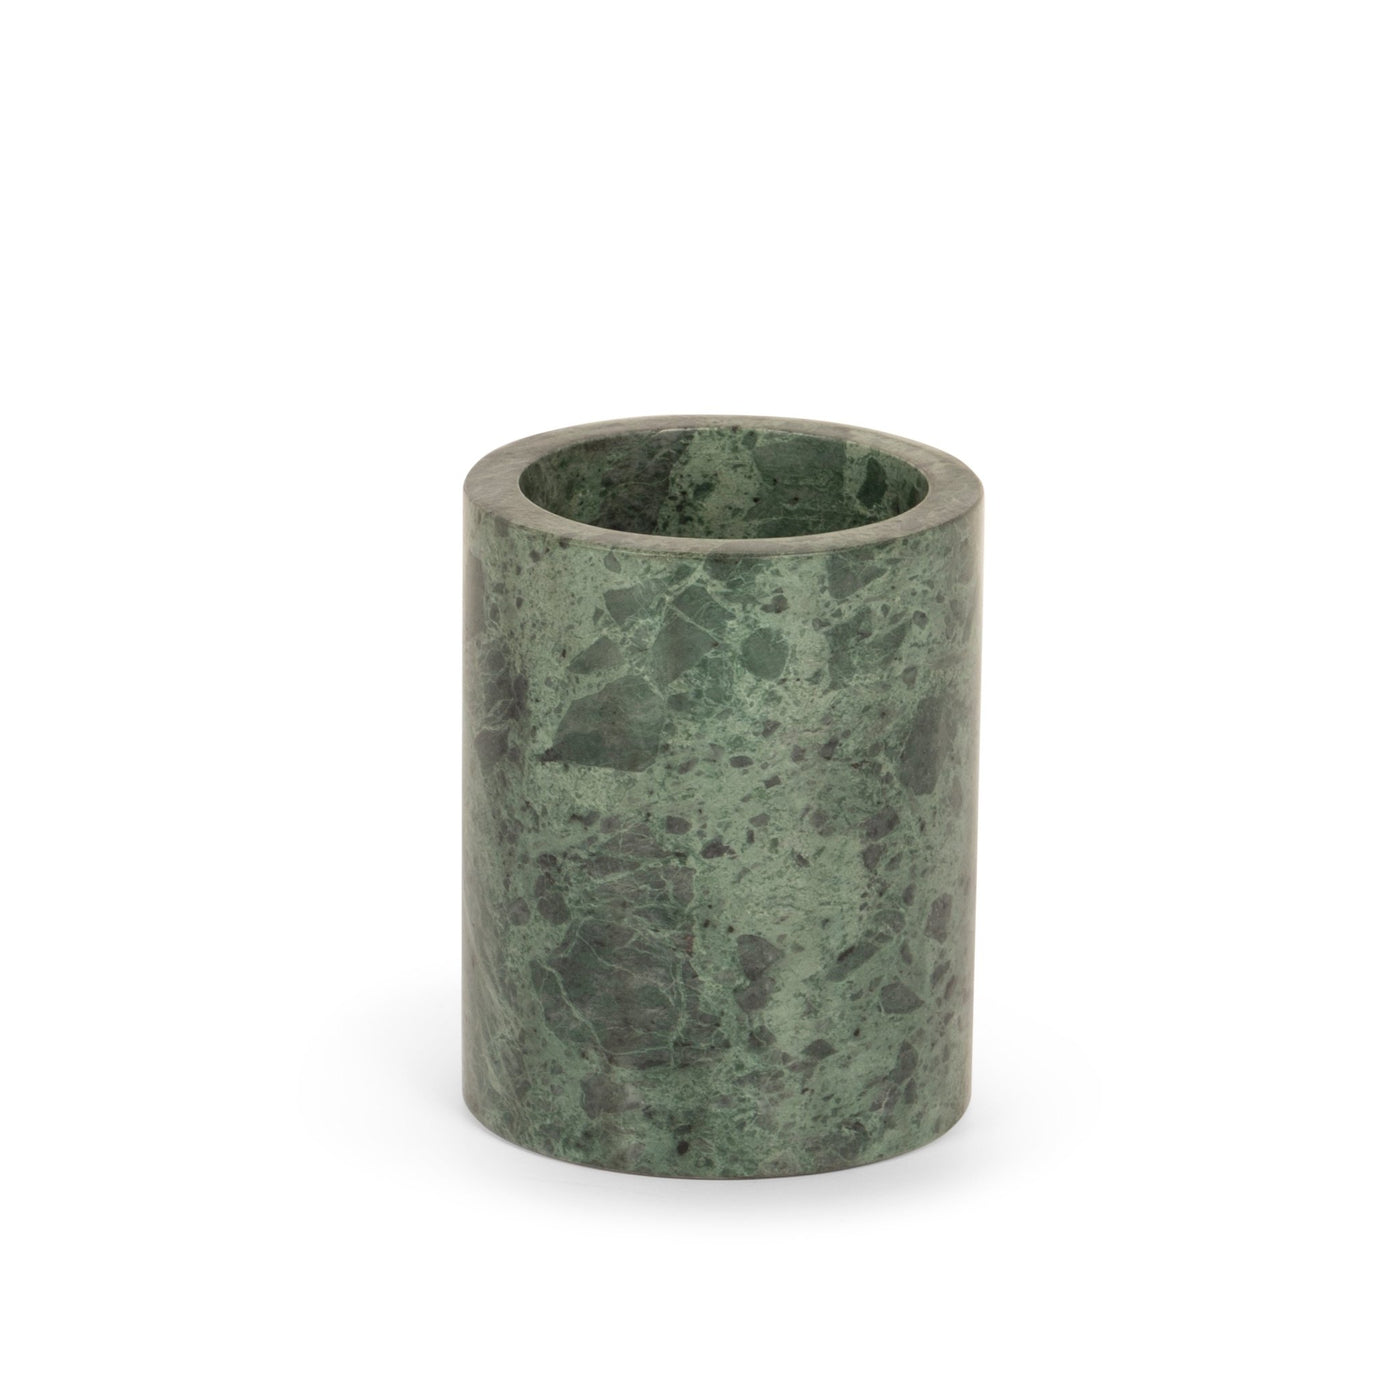 Stoned Marble Zahnbürsten & Aufbewahrungsdose aus Marmor wahlweise in Grün H10xD8cm & 0,73kg - Bitangel RENOVATE & FURNISH HOMES GmbH